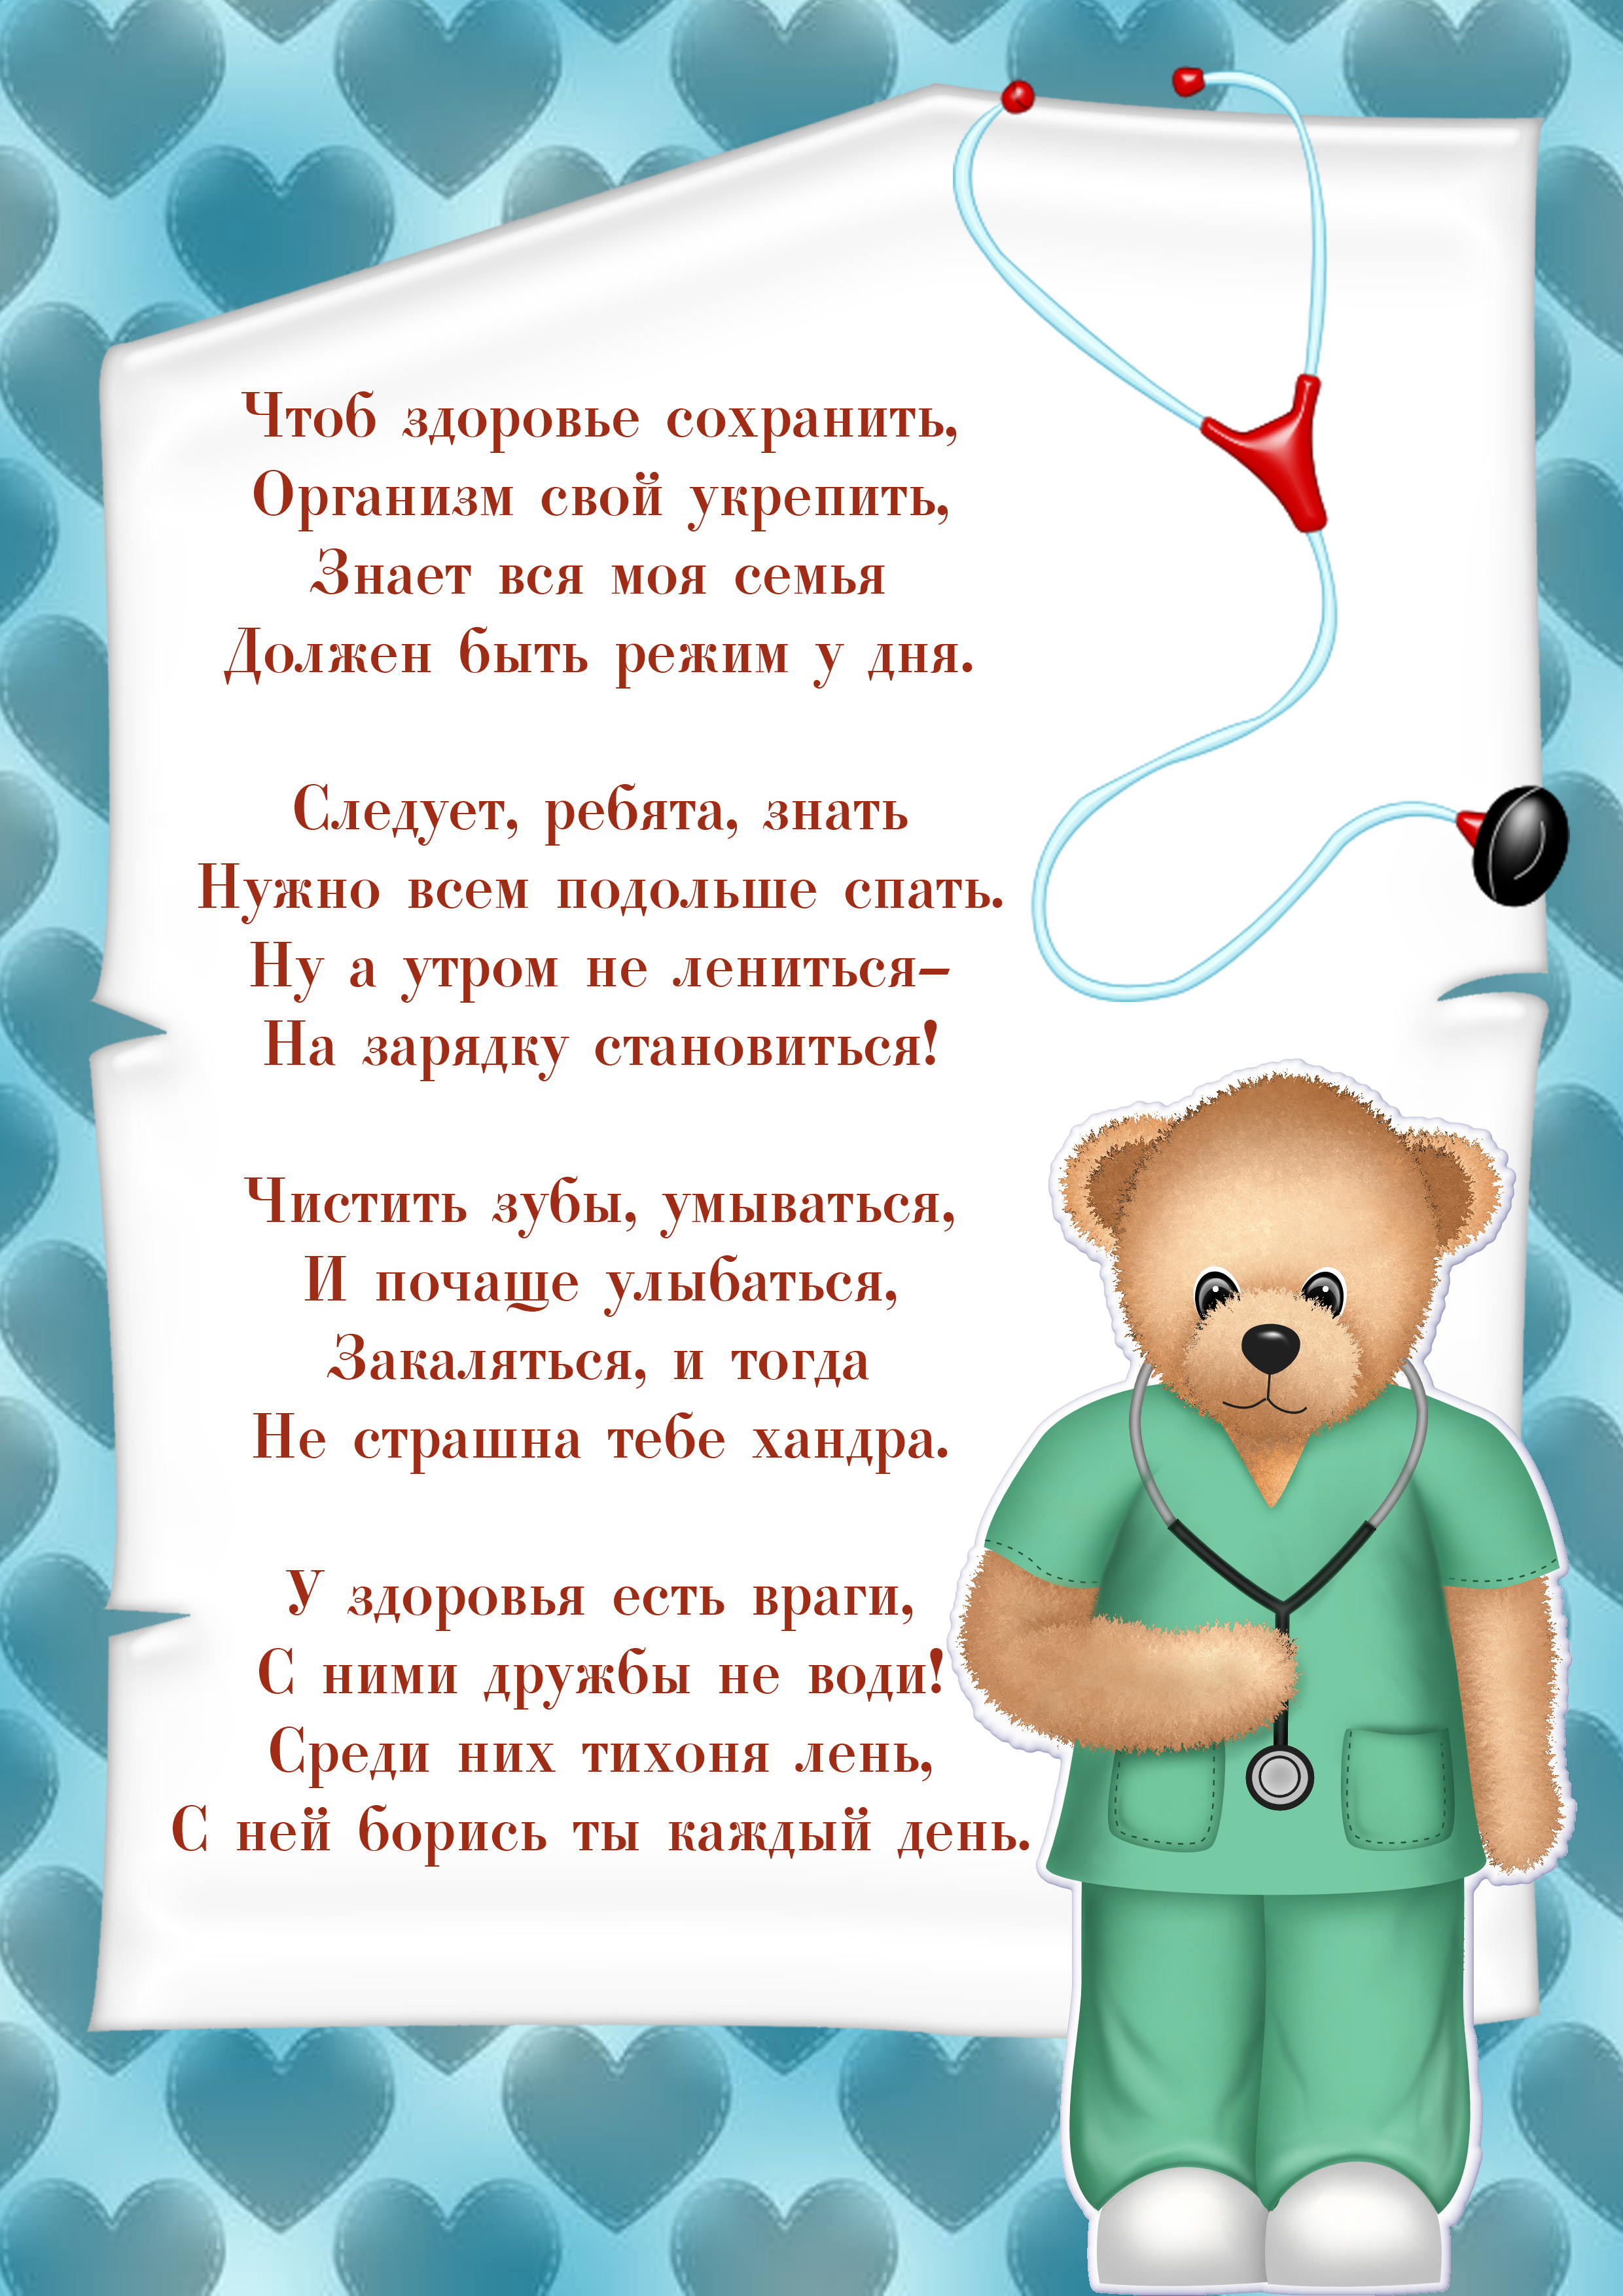 Уголок здоровья в доу: основные аспекты оформления и содержания - deti-i-vnuki.ru